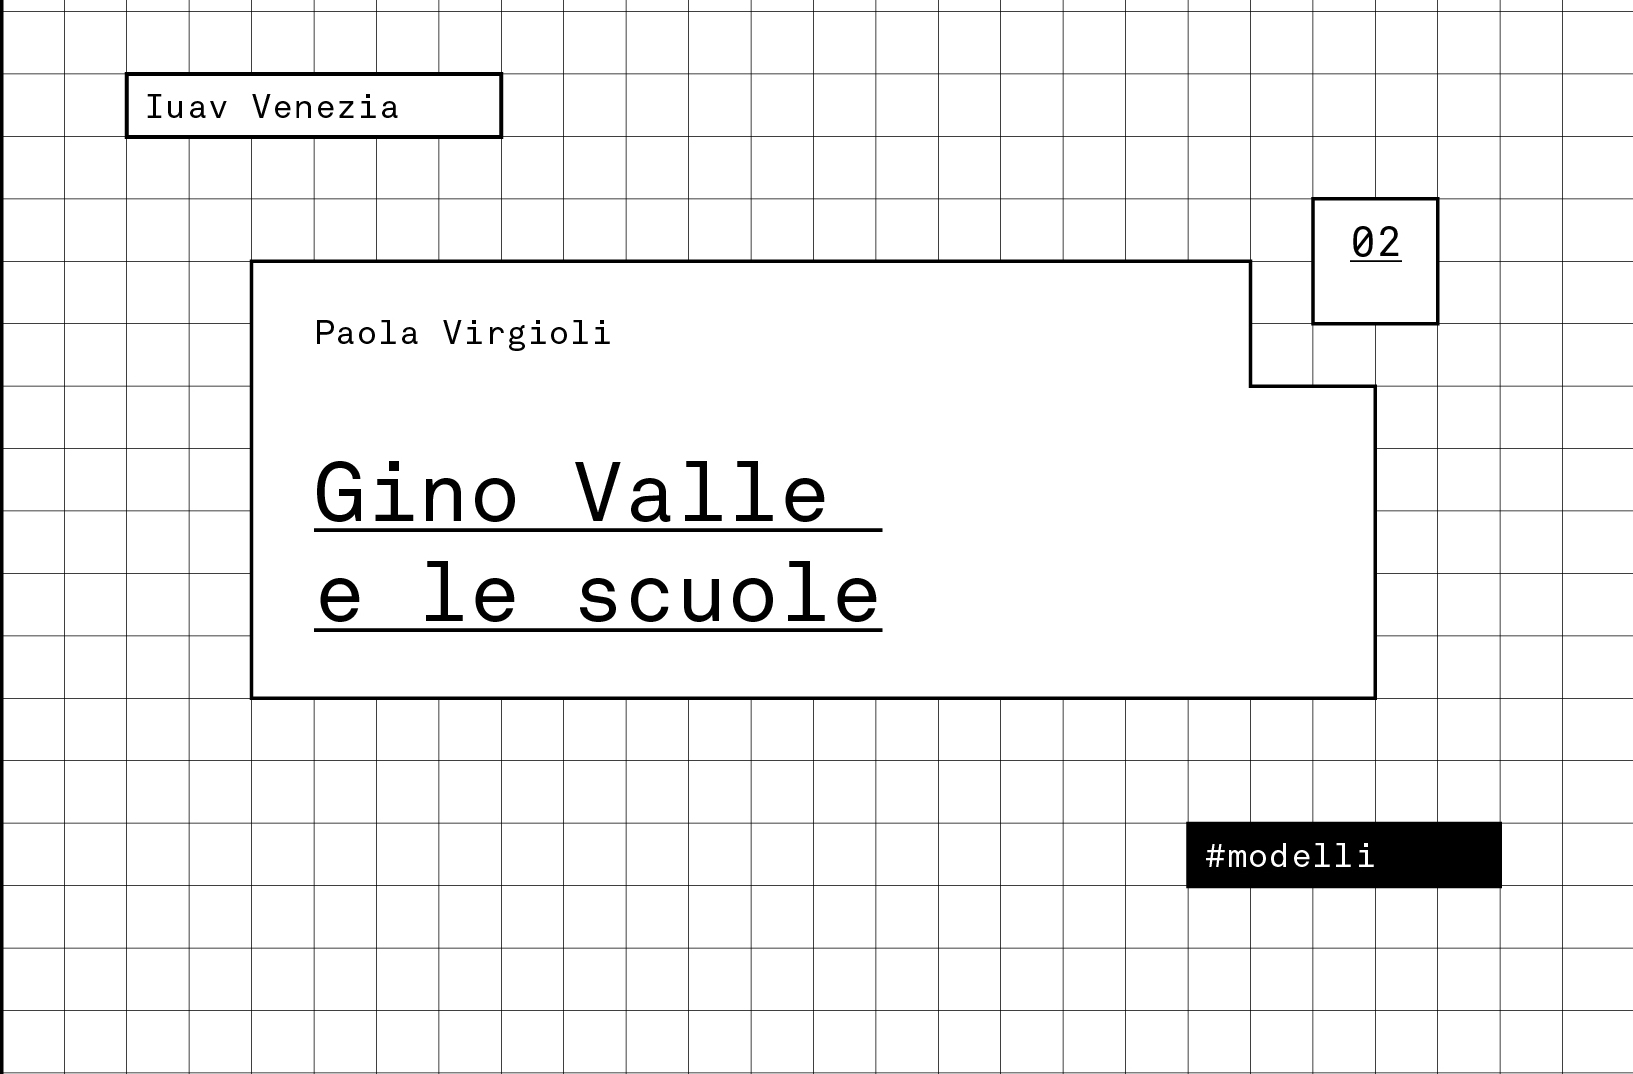 Volume n. 02 Gino Valle e le scuole